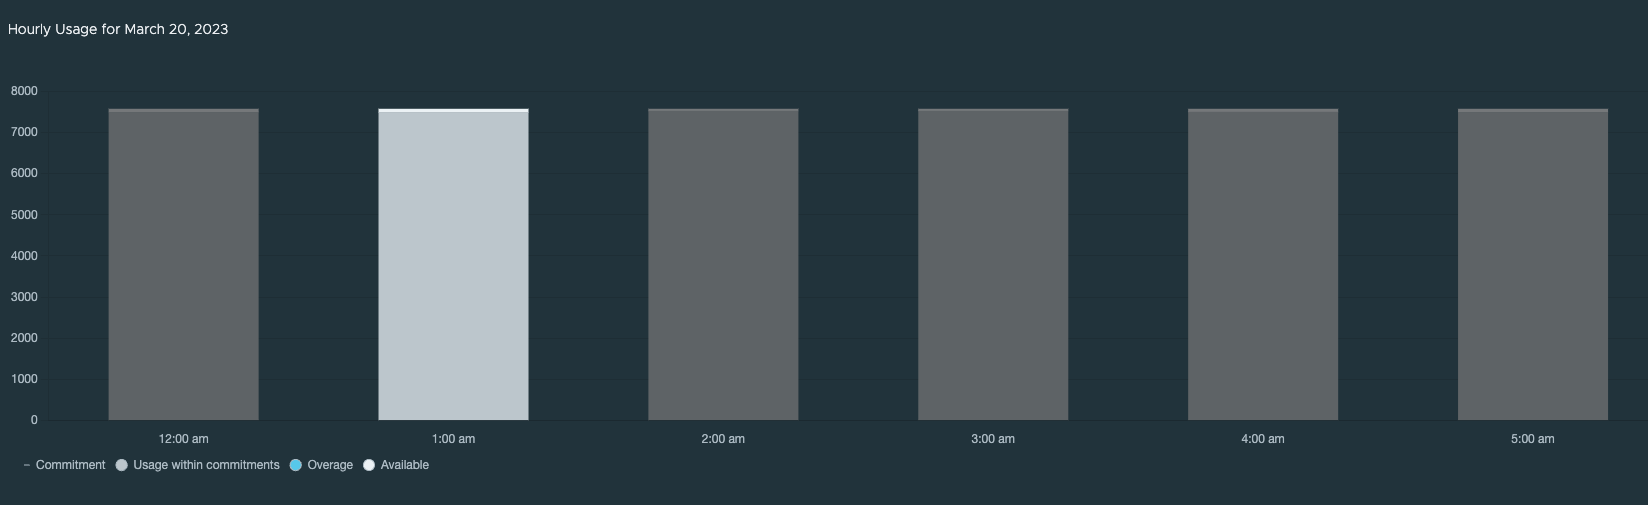 Exemple de diagramme d'utilisation horaire.